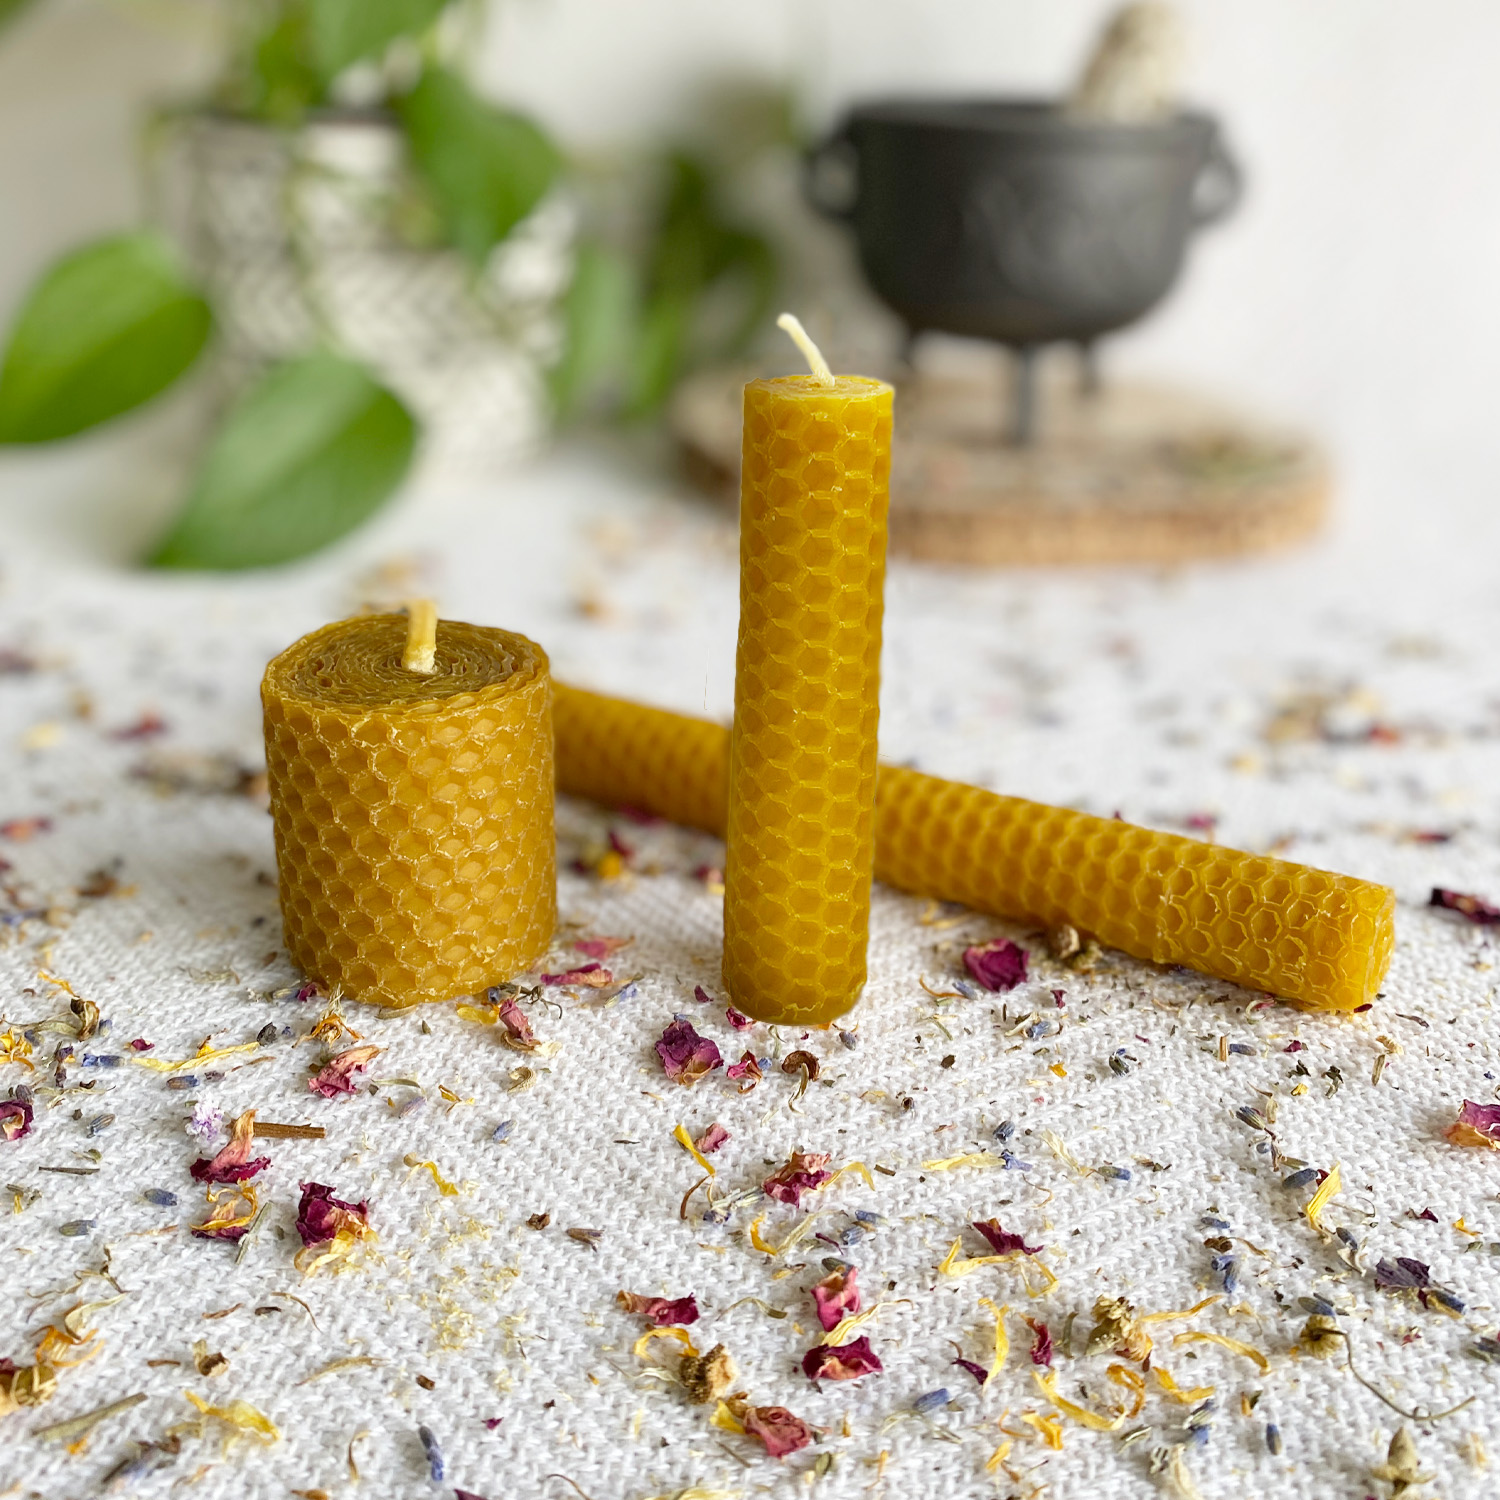 Velas de miel: para qué sirven y sus diferentes formatos - Velas y Aromas  Tienda de Velas artesanales hechas en España